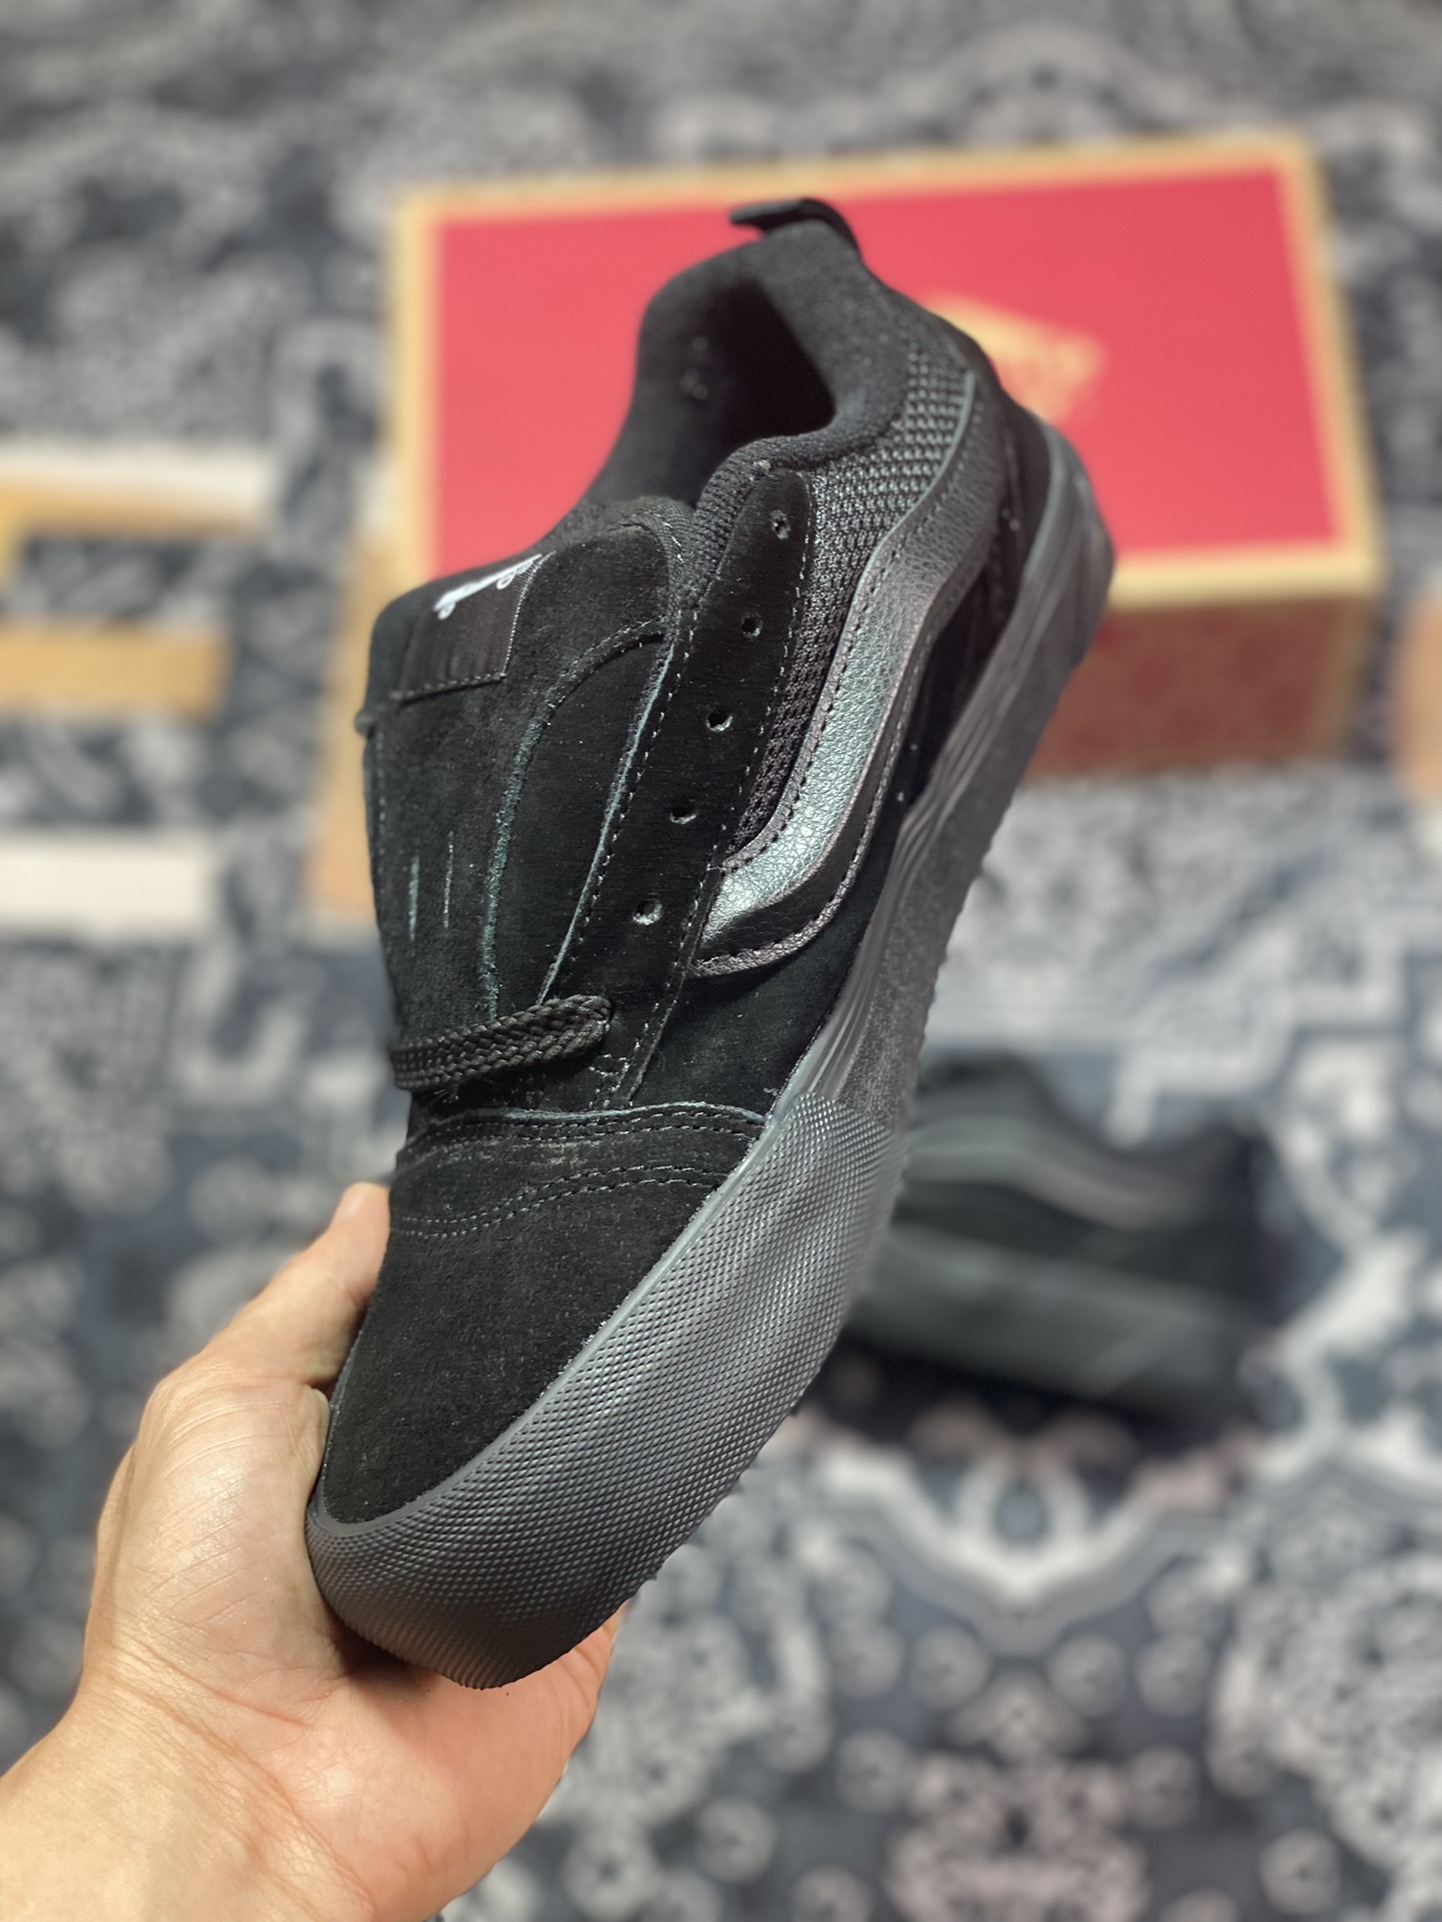 Vans Knu-Skool VR3 LX bread shoes Black Warrior low-top retro casual vulcanized sneakers